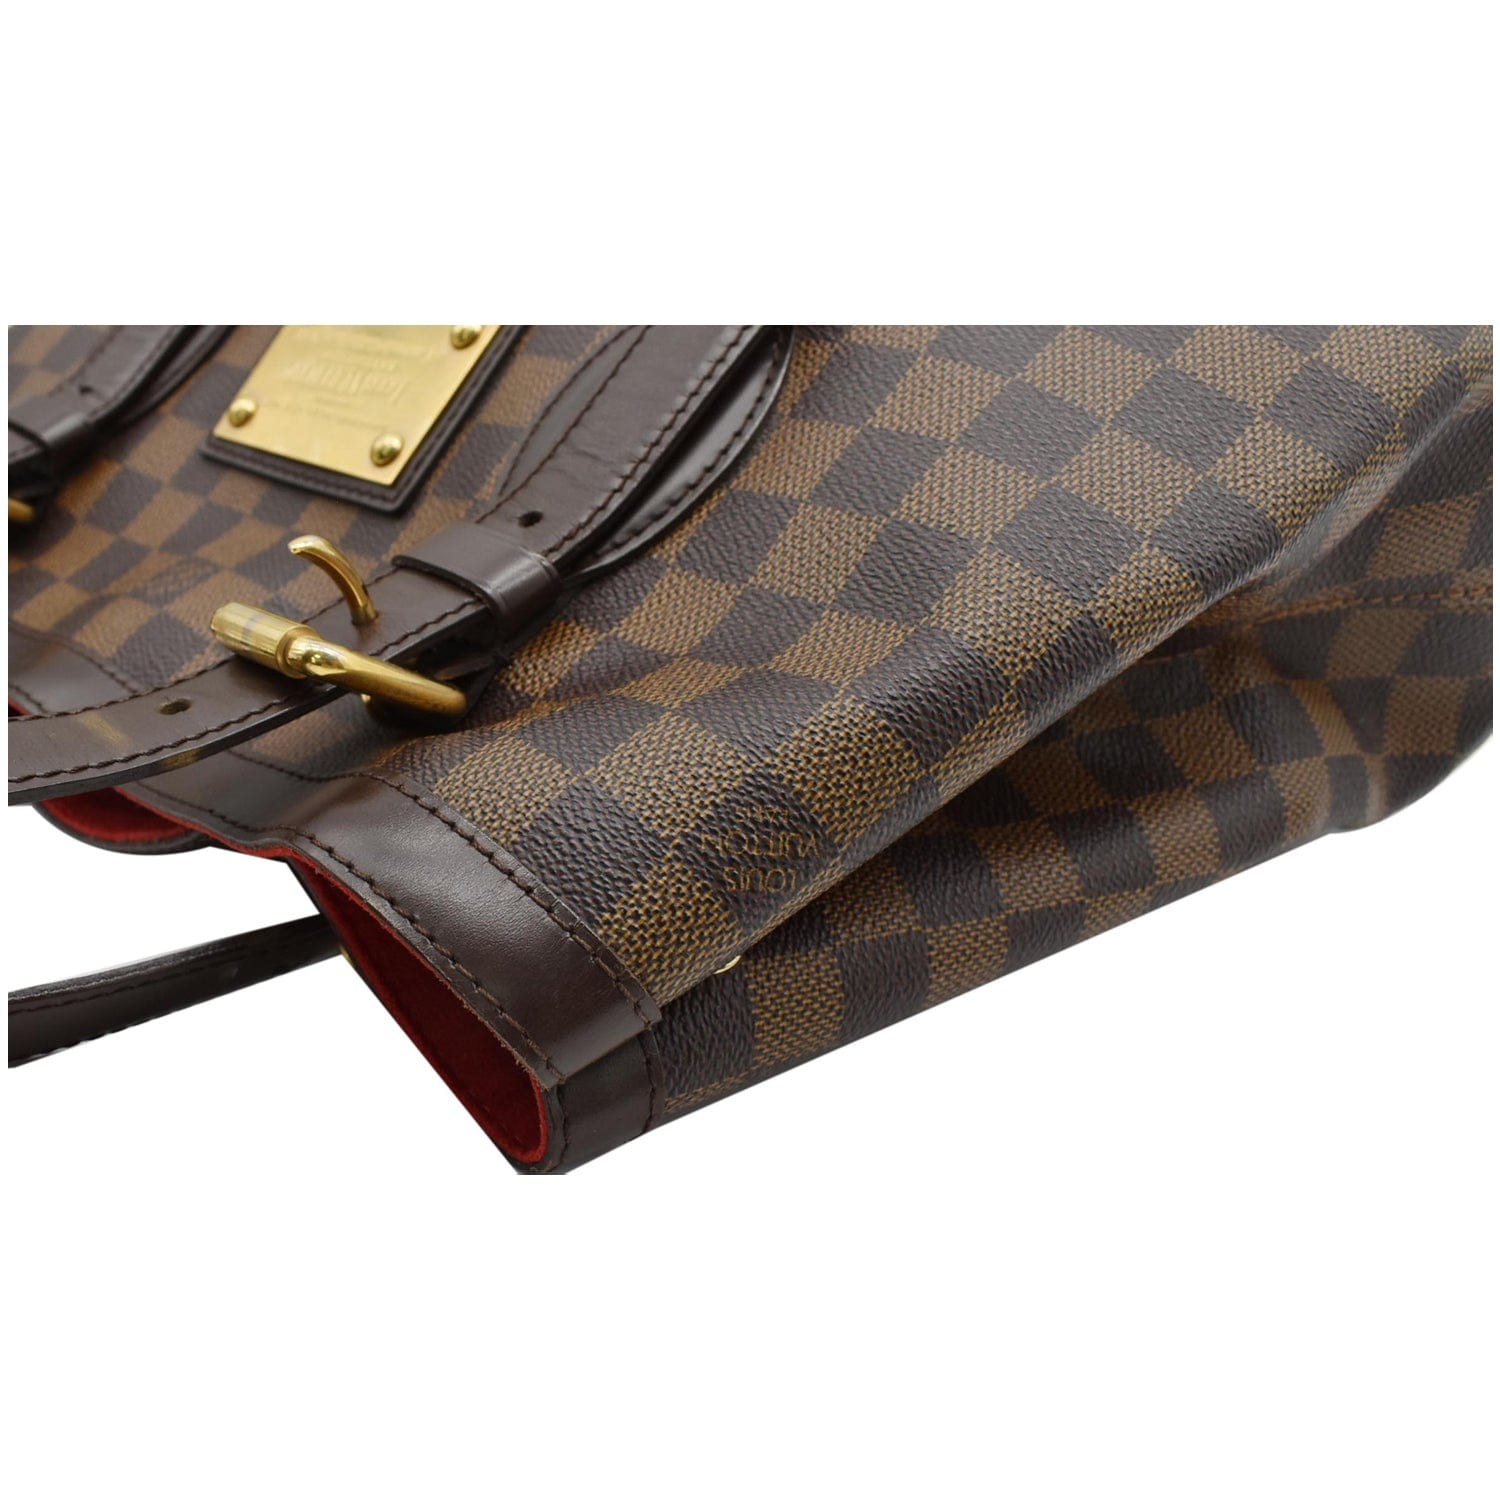 Authentic Louis Vuitton Damier Ebene Canvas & Leather Hampstead MM Tote Bag